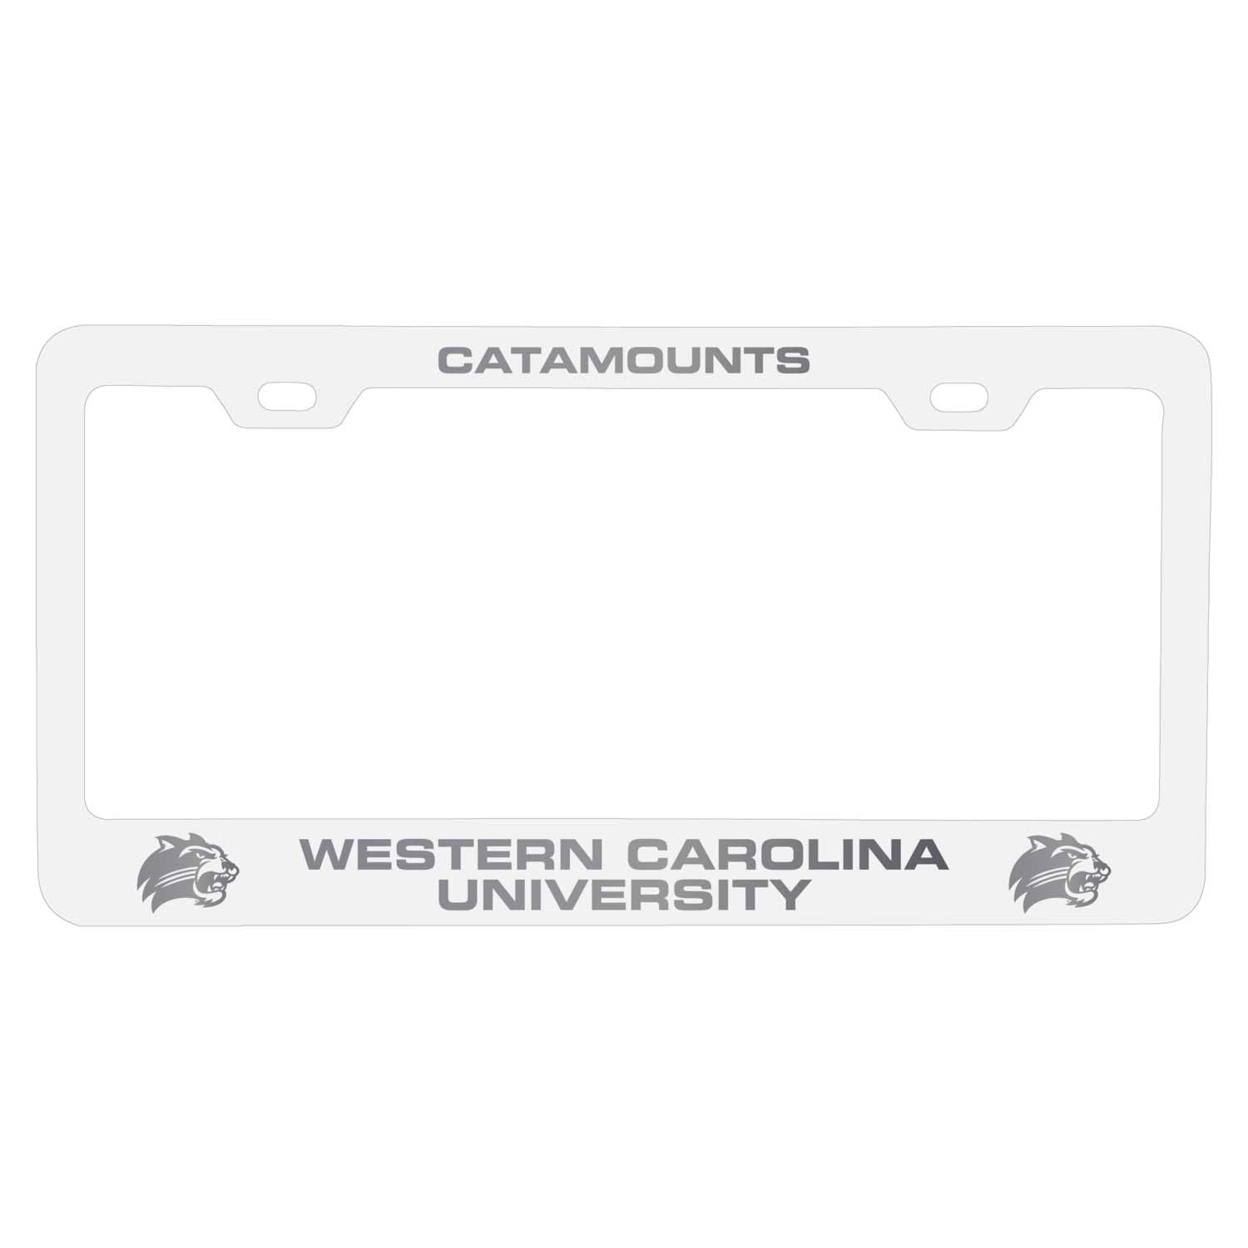 Western Carolina University Laser Engraved Metal License Plate Frame - Choose Your Color - White